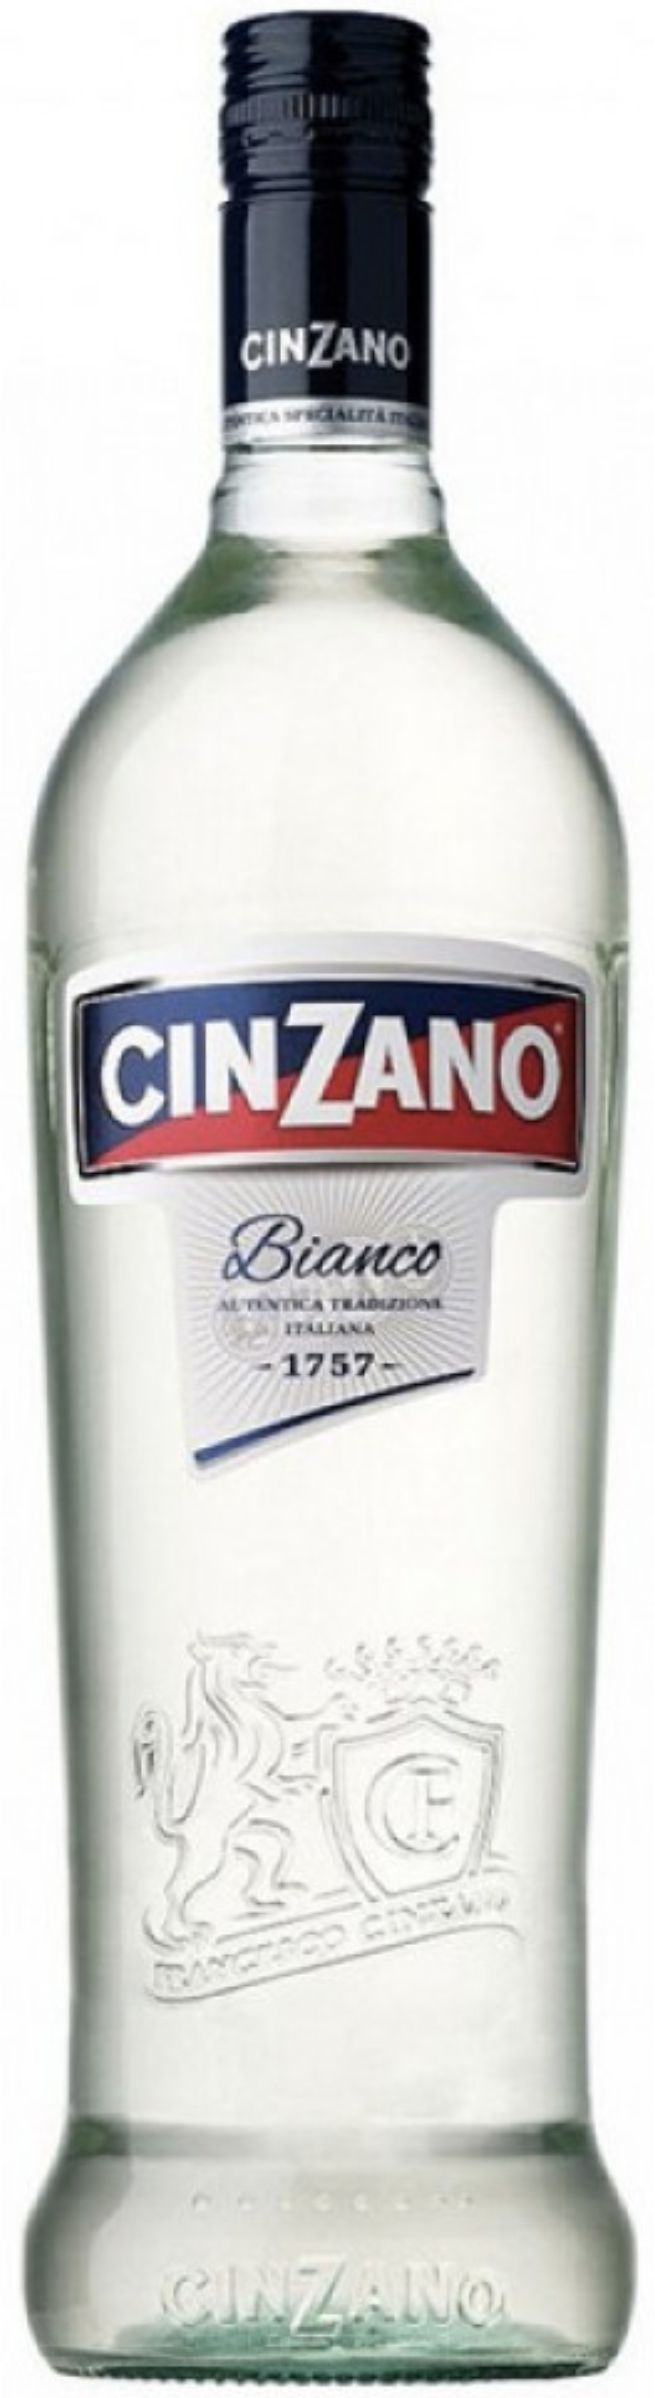 Виноградосодержащий напиток Вермут сладкий белый Чинзано Бьянко креп 15 %, емк 1.0л